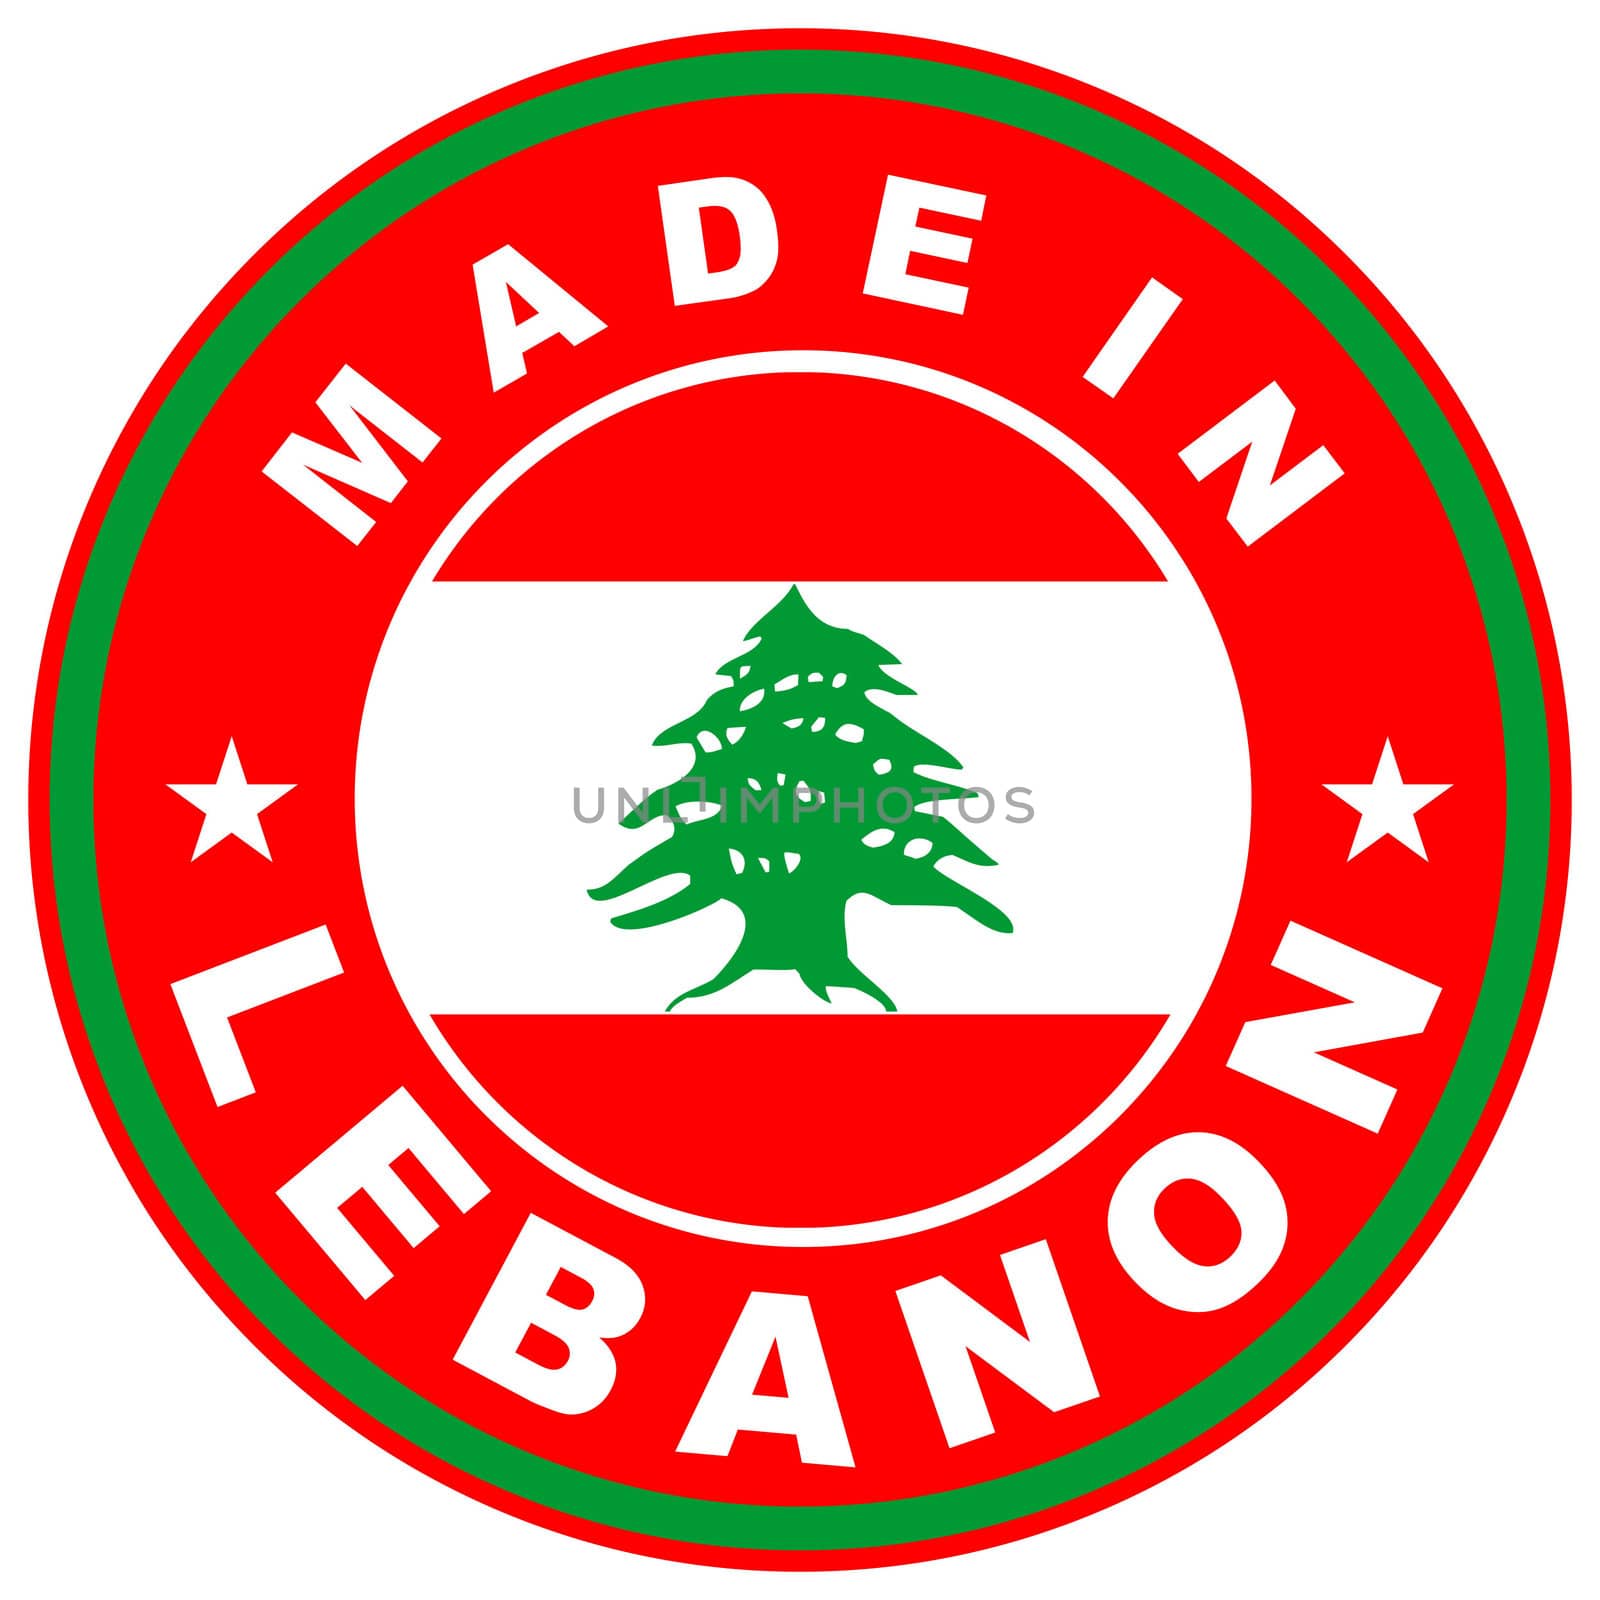 made in lebanon by tony4urban